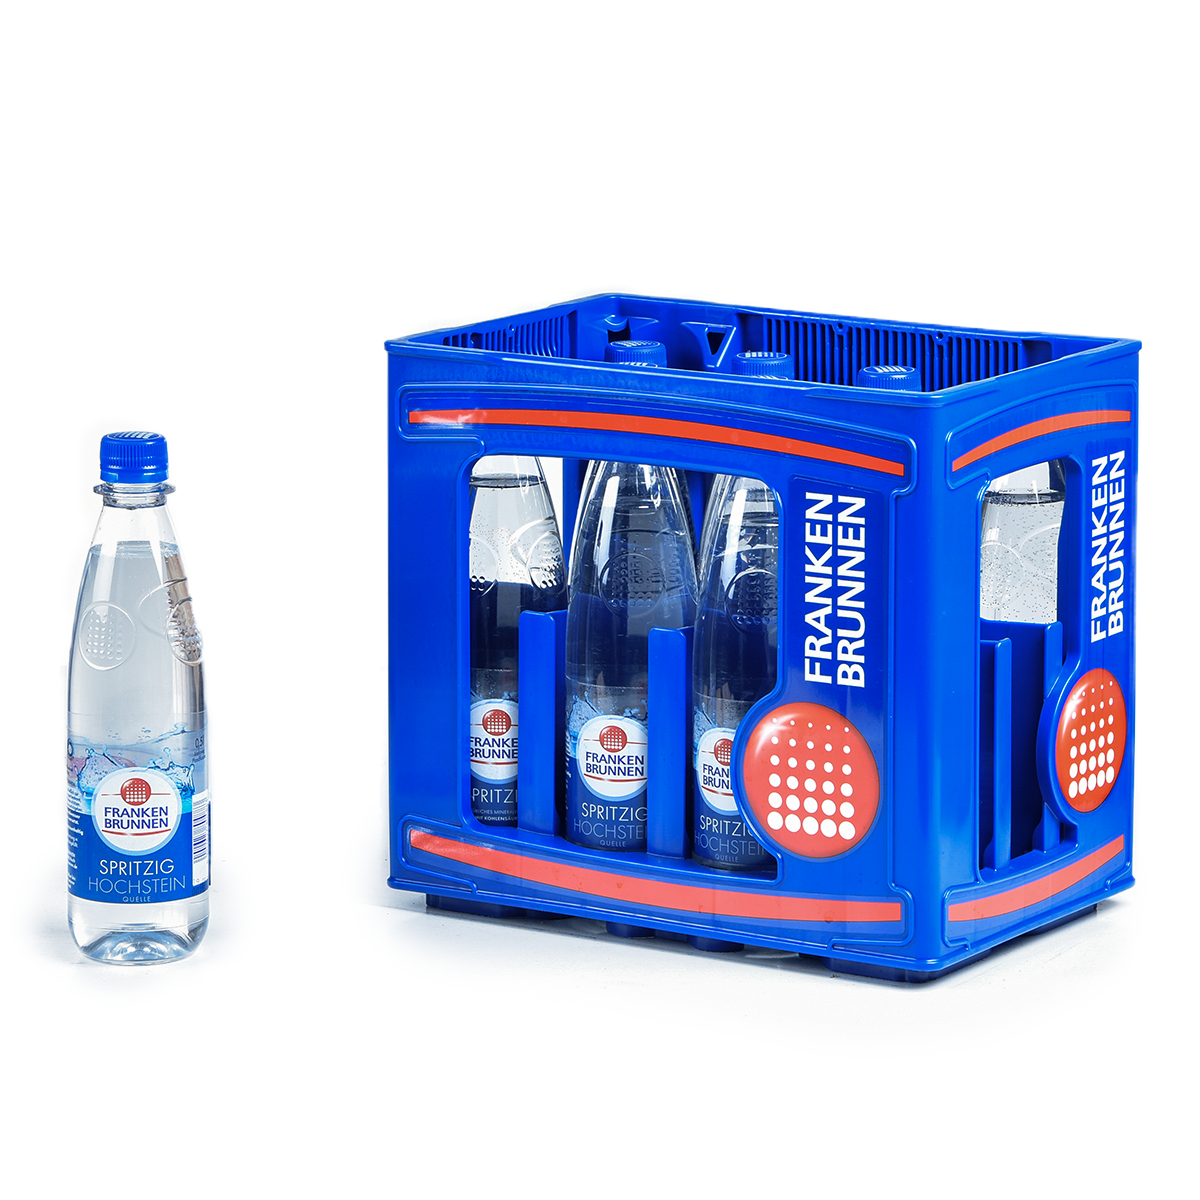 BRUNNEN-spezial Frostschutz 1 L, Brunnenpflege, Produkte